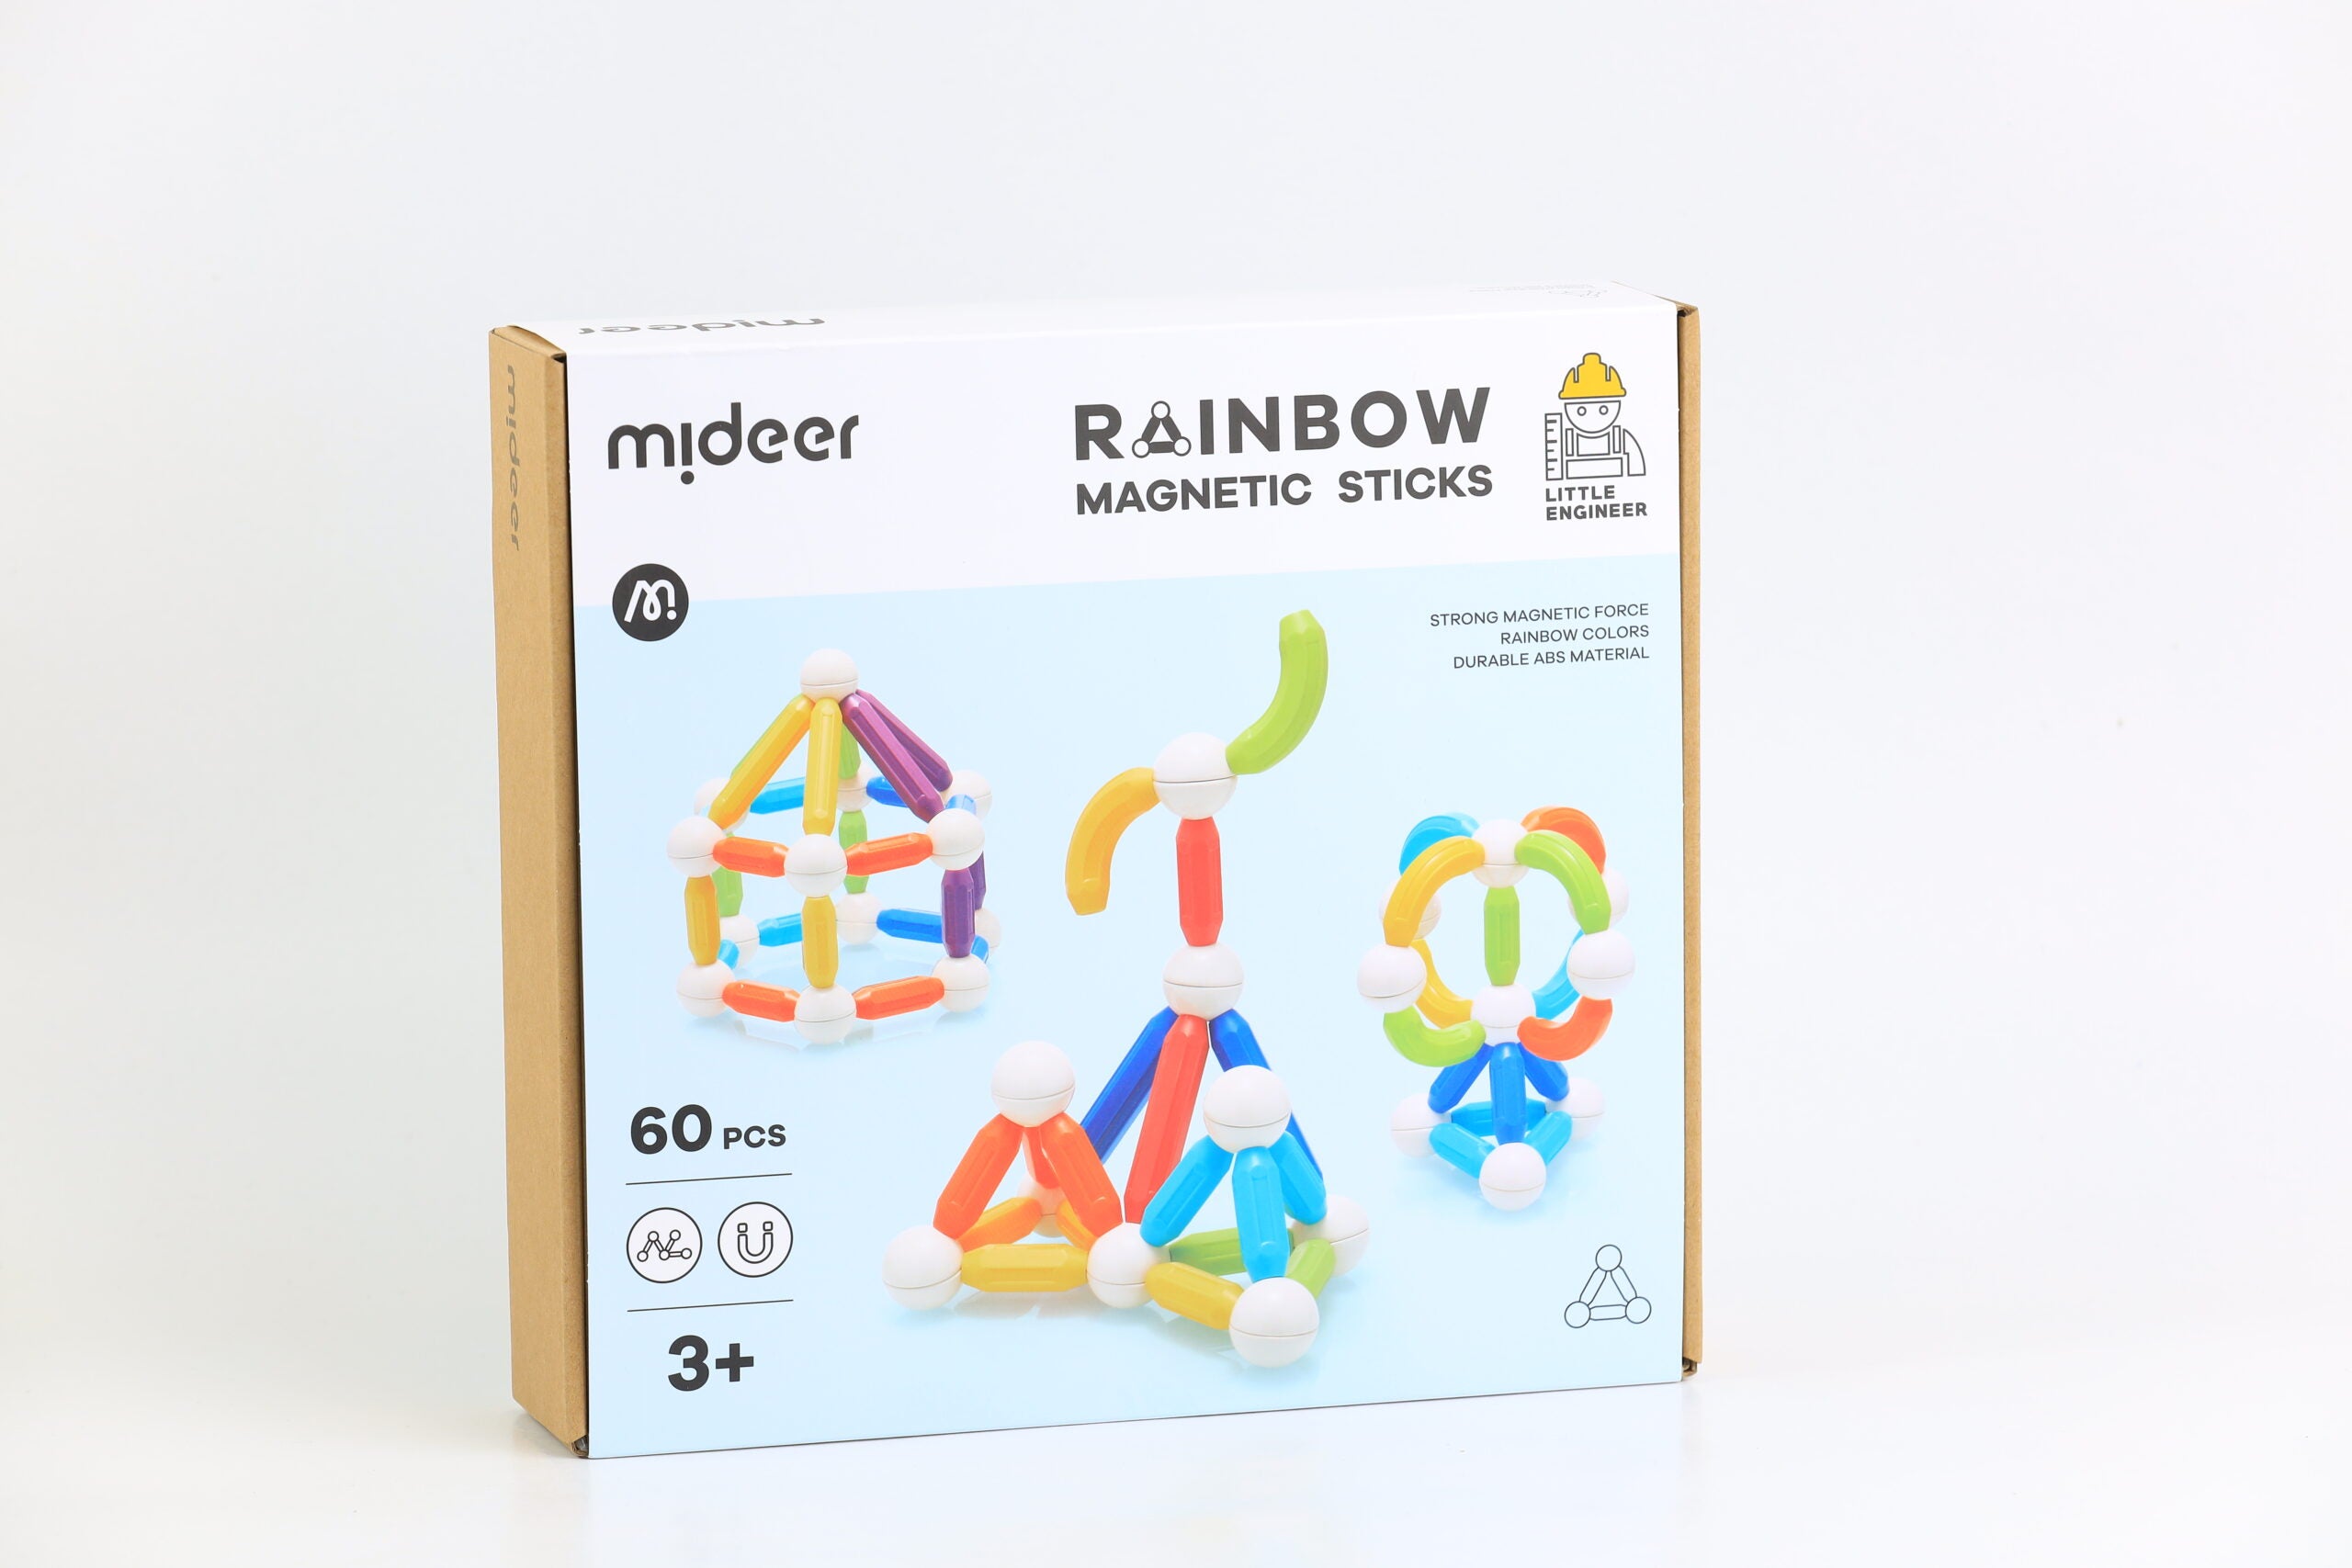 Mideer Rainbow Magnetic Sticks 60pcs